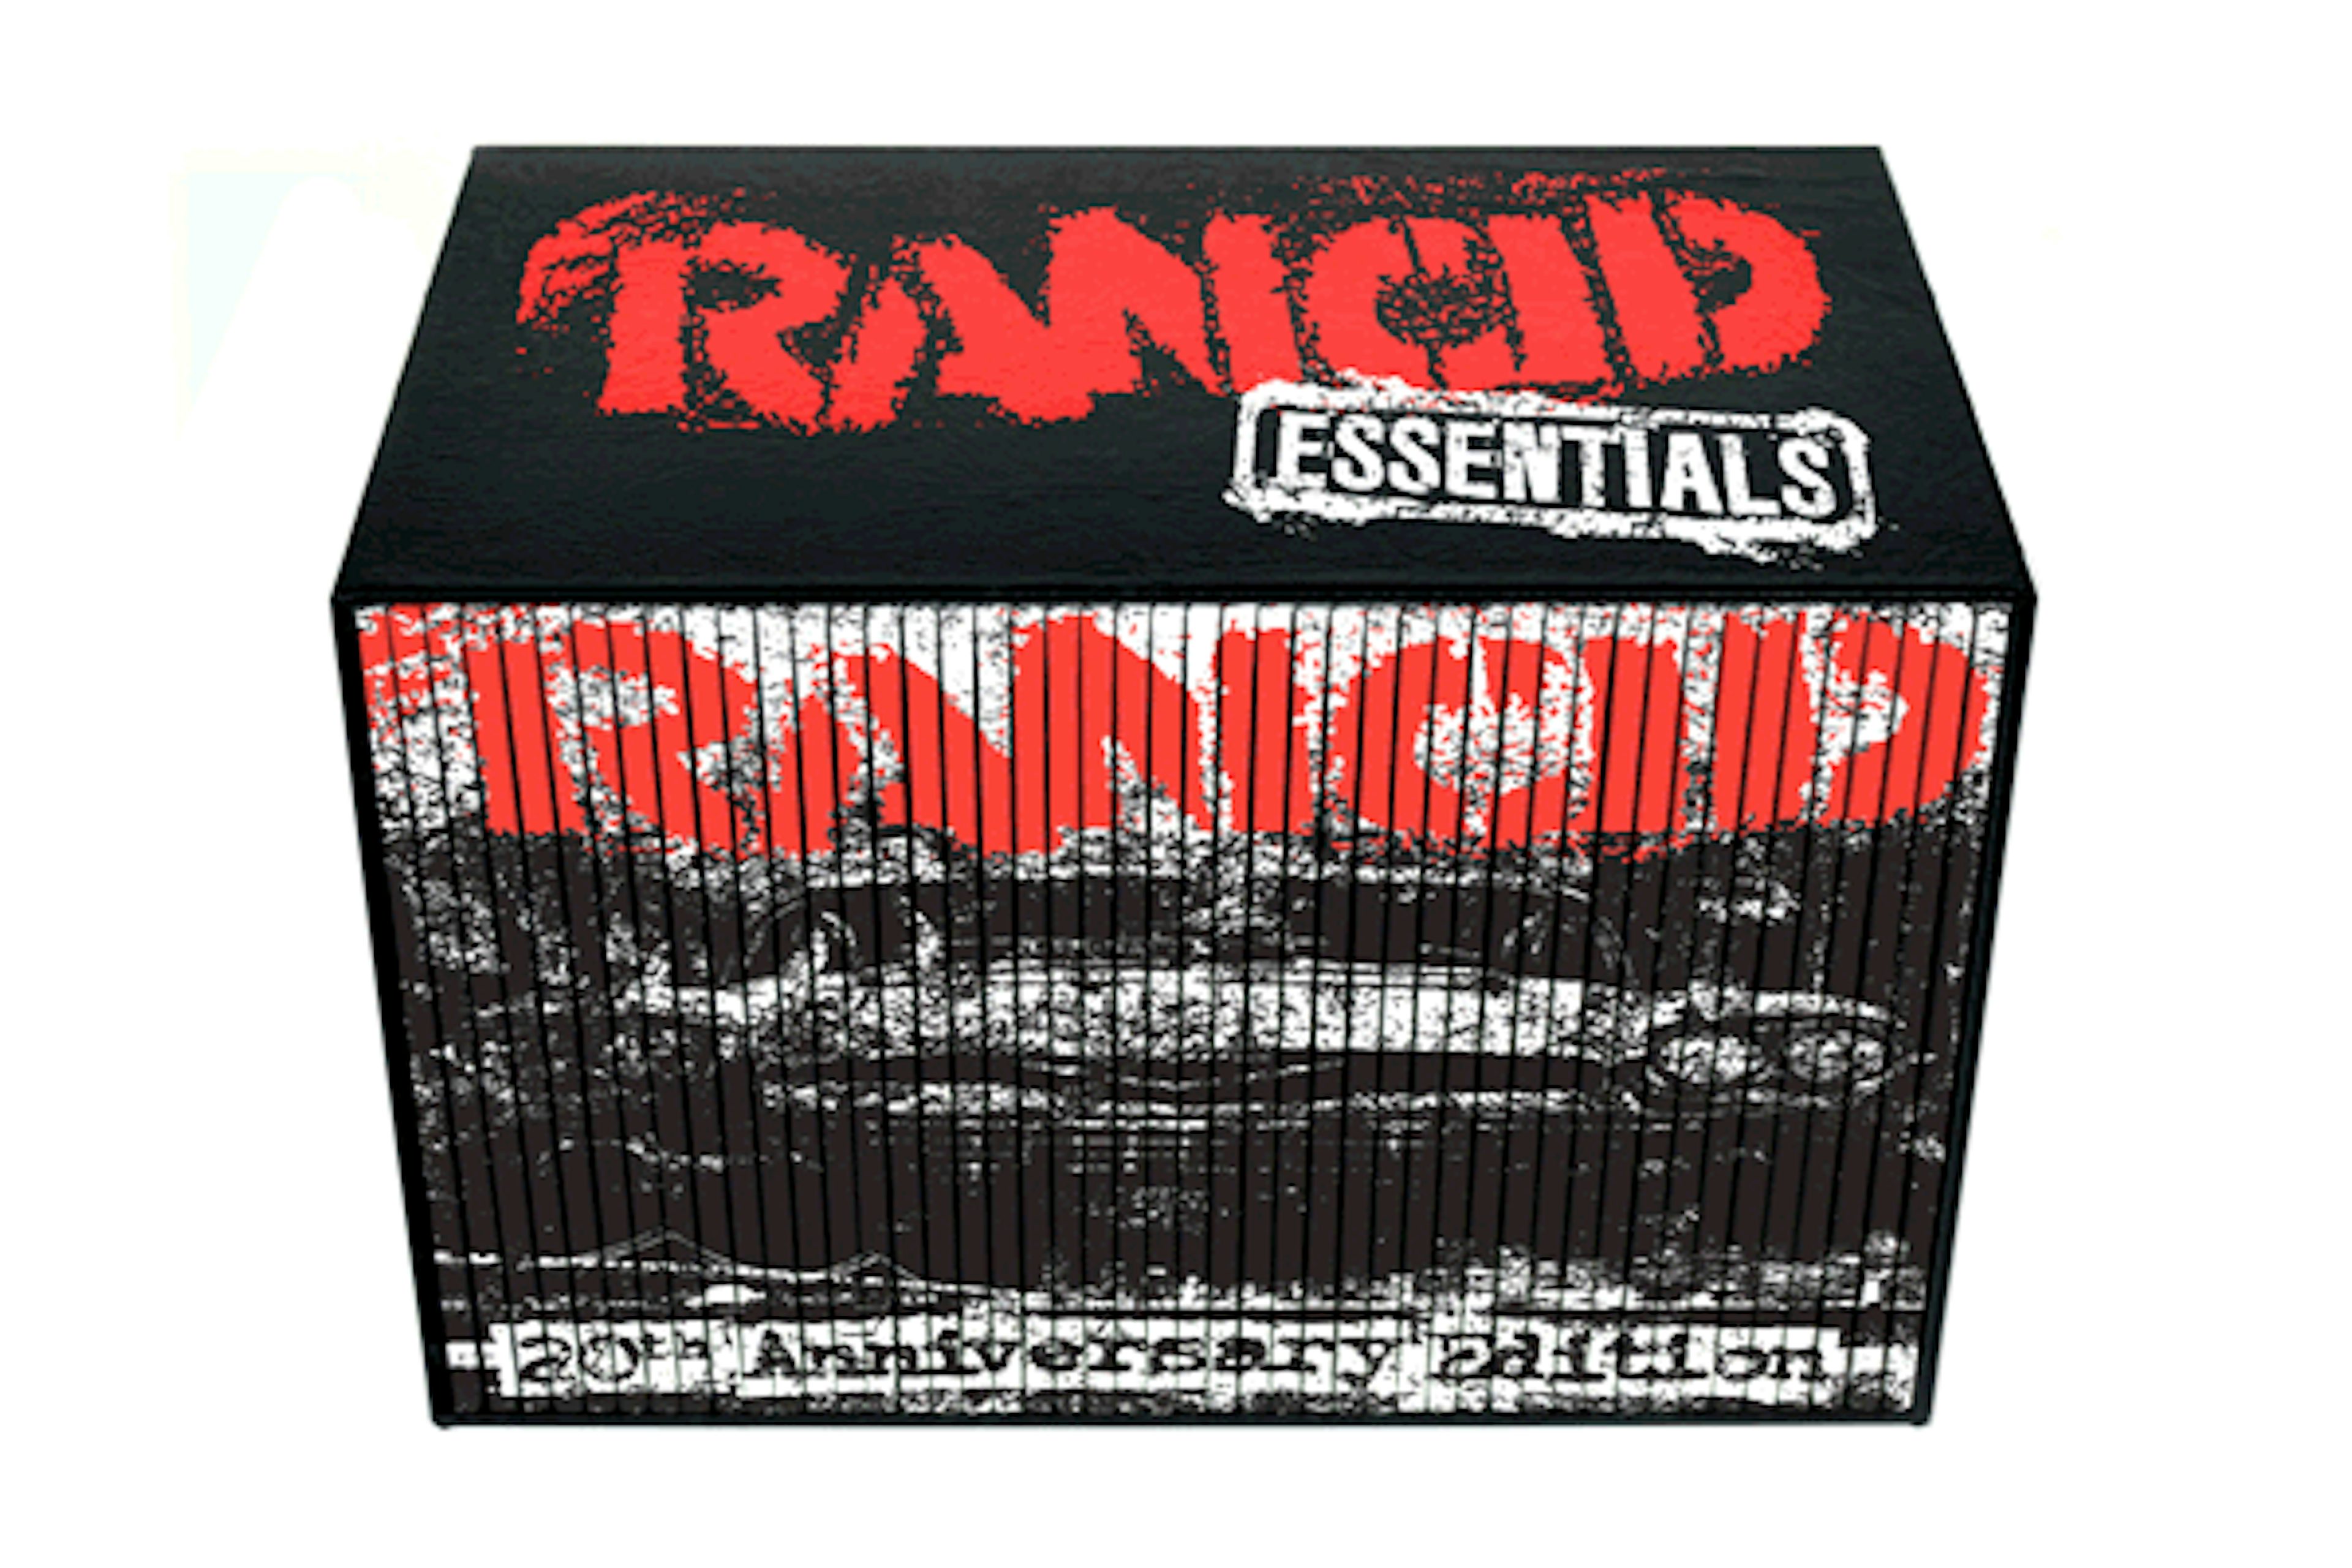 Rancid - Essentials Box Set 46 7